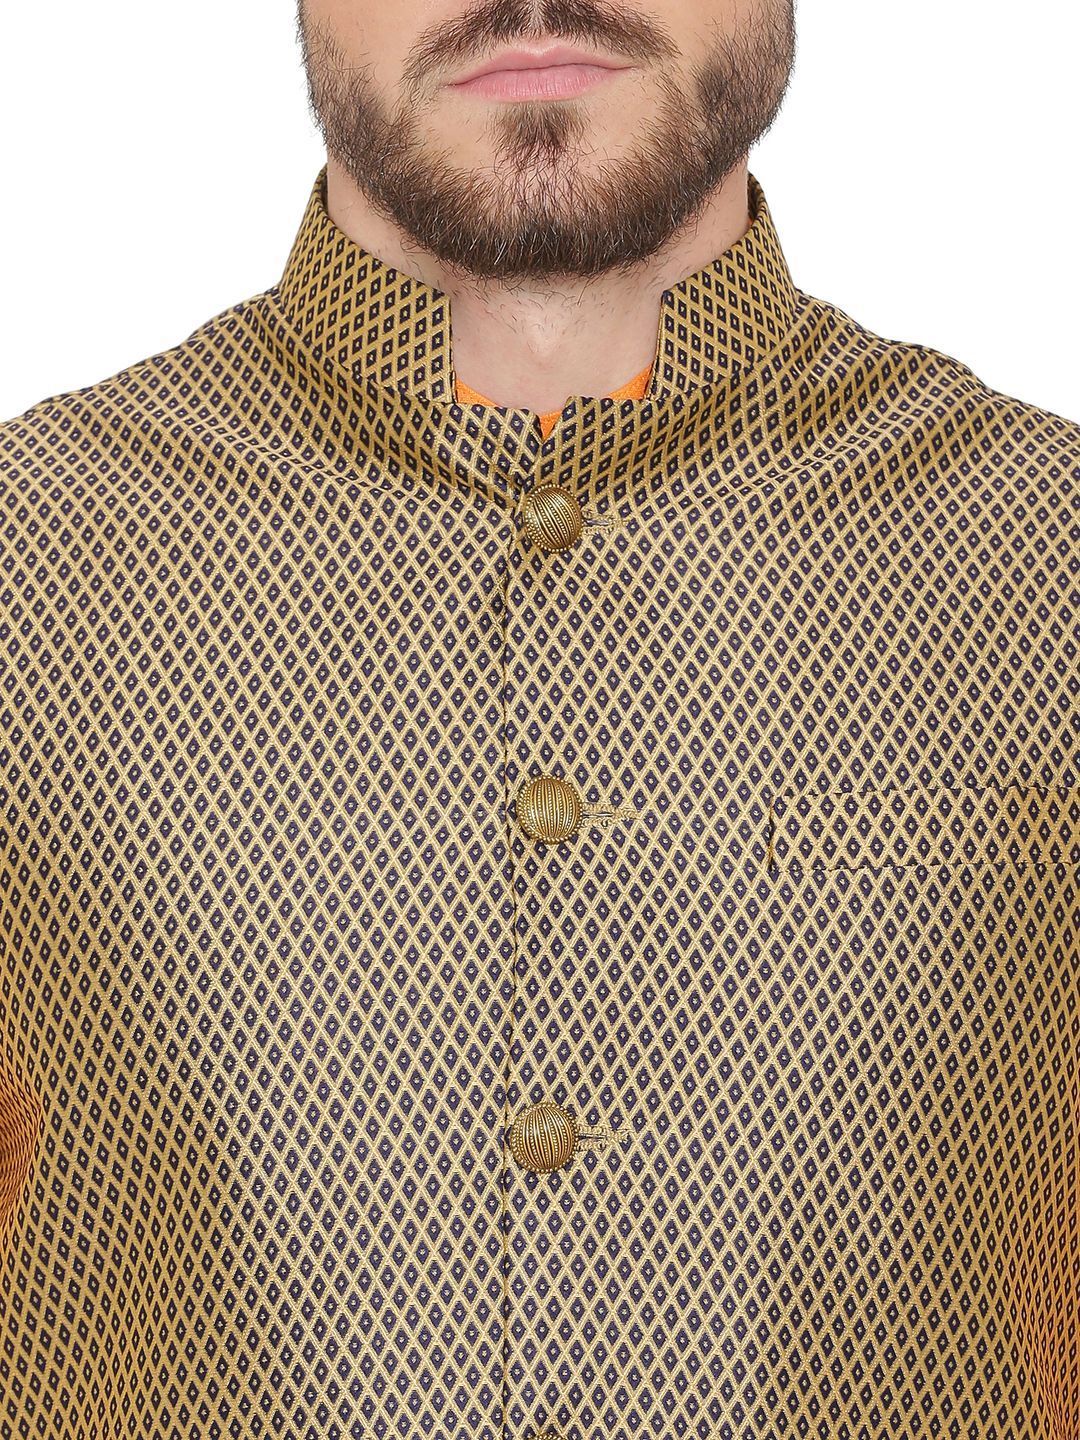 Banarasi Rayon Cotton Brown Nehru Jacket